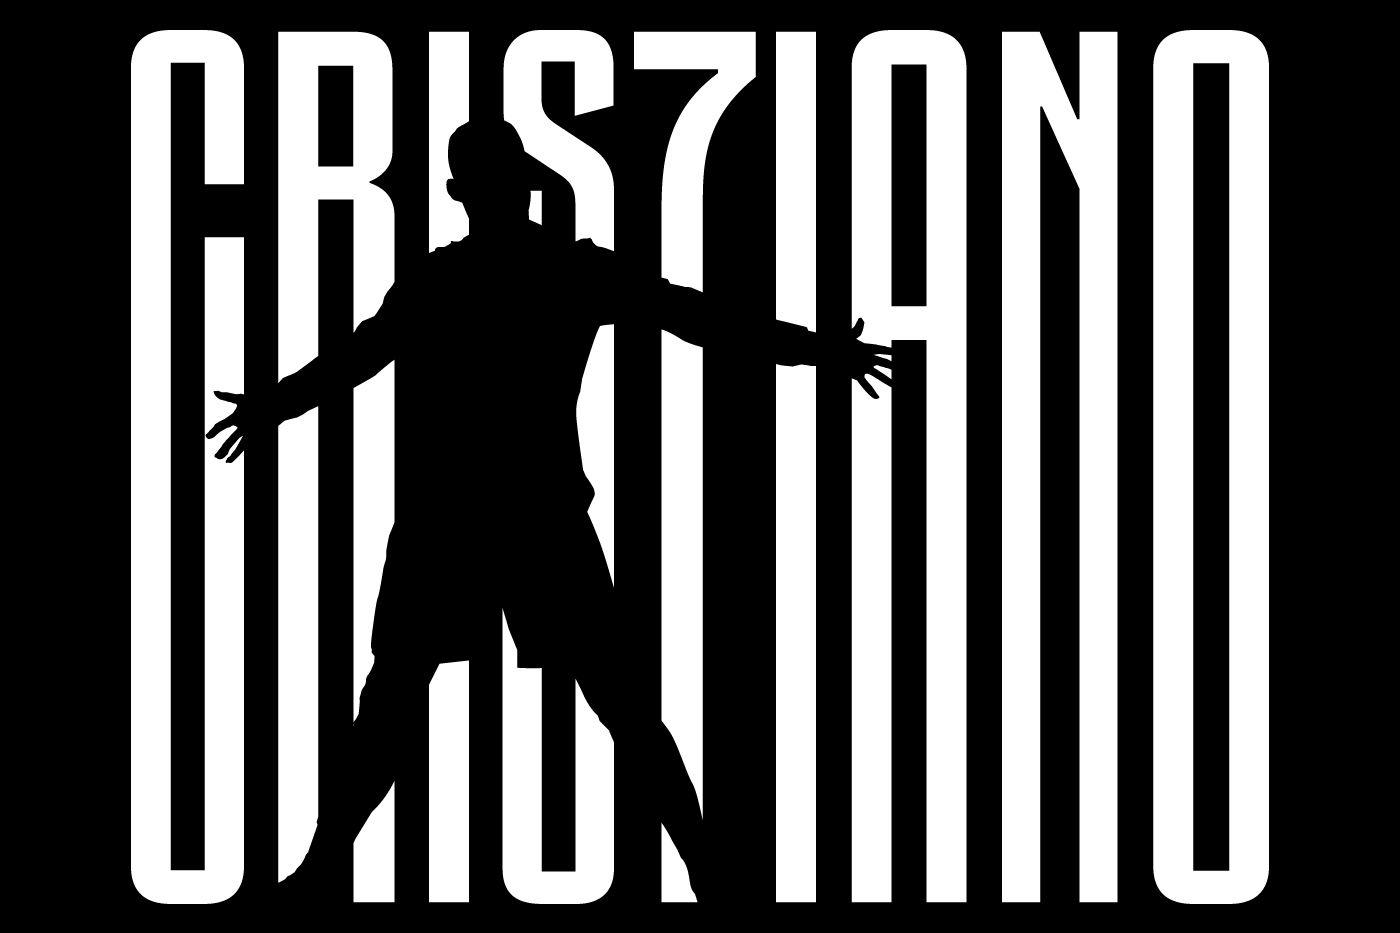 Ronaldo Logo - Cristiano Ronaldo signs for Juventus! - Juventus.com